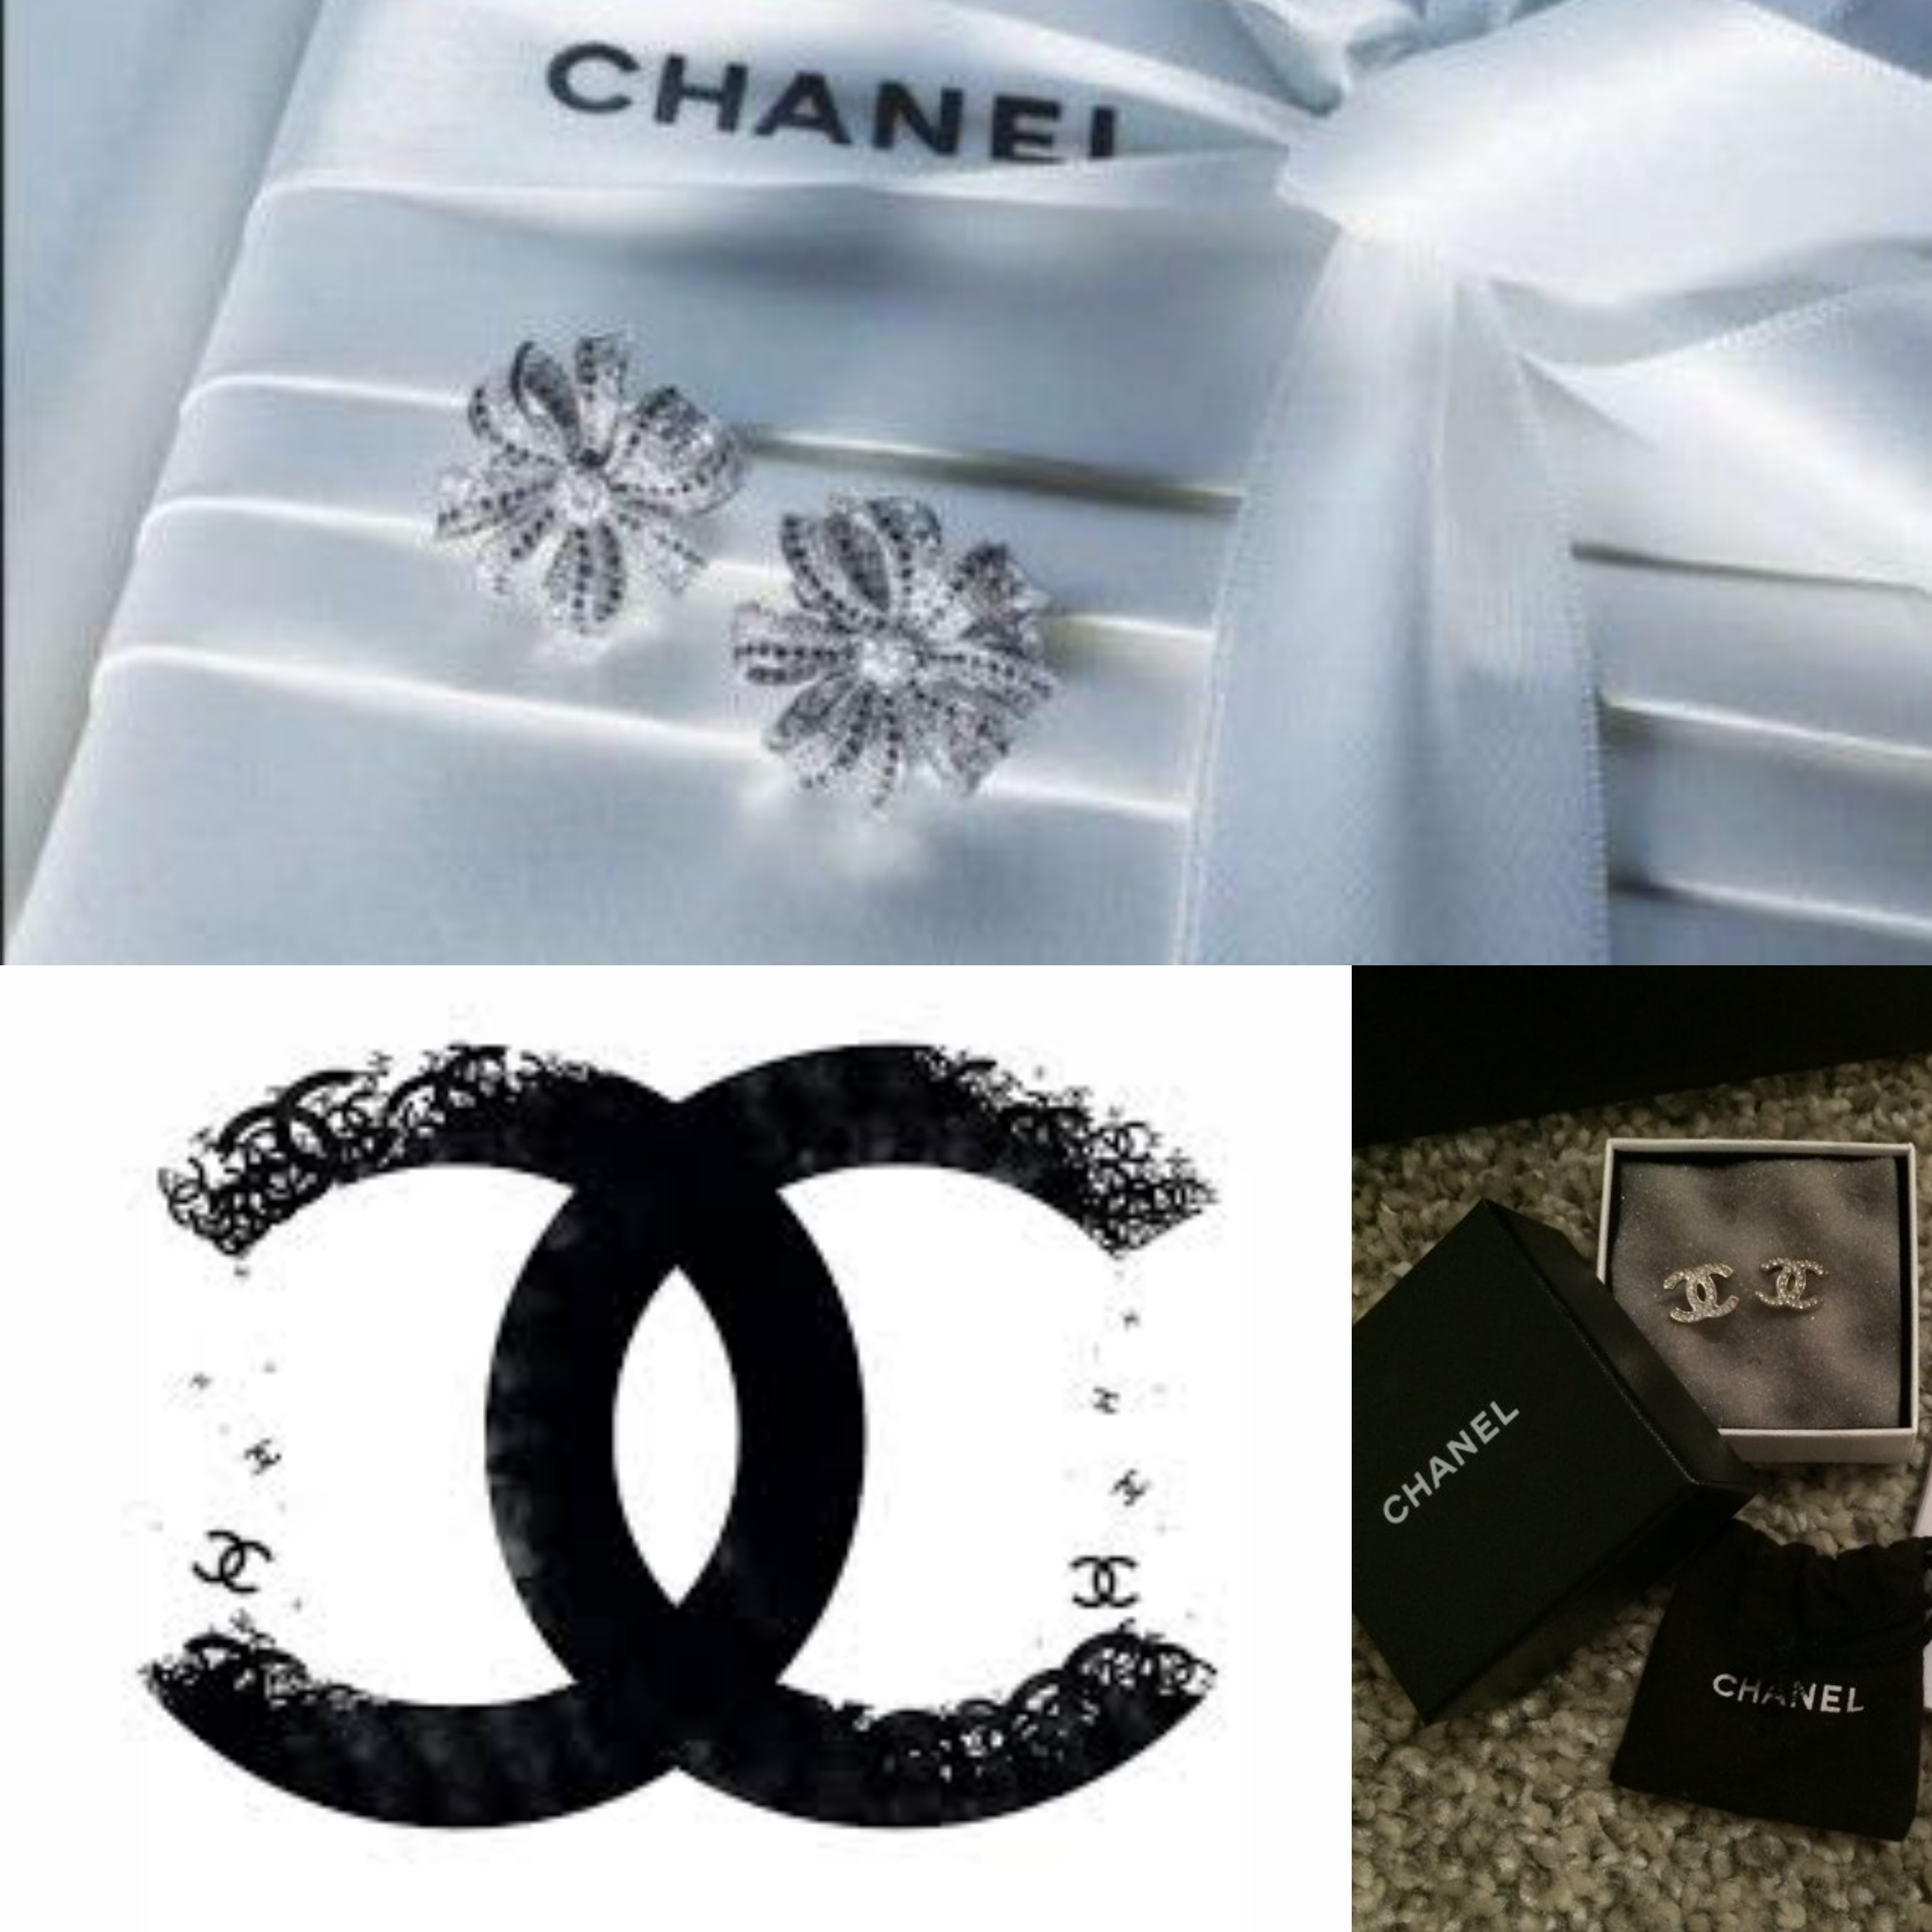 Come riconoscere gioielli falsi Chanel